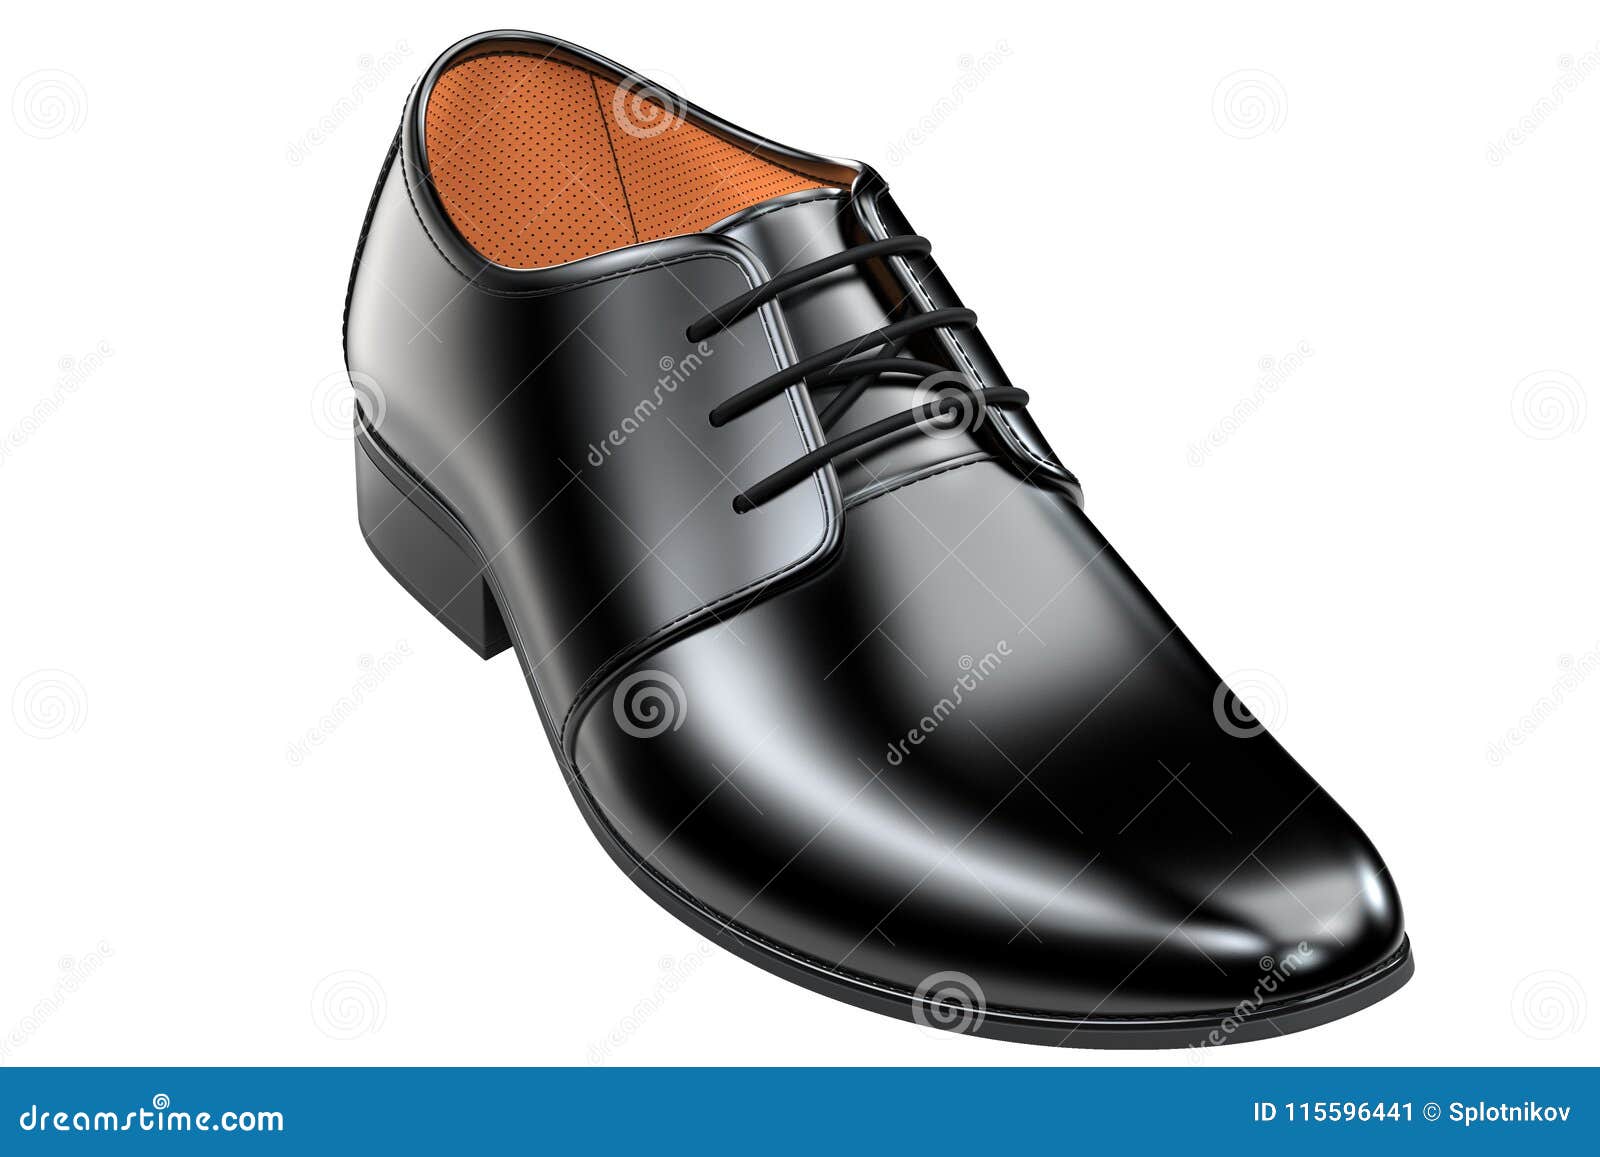 Representación De Los Zapatos De Cuero 3d Aislada En El Fondo Blanco - Incluyendo La Trayectoria De Recortes Stock de ilustración - Ilustración de manera, 115596441